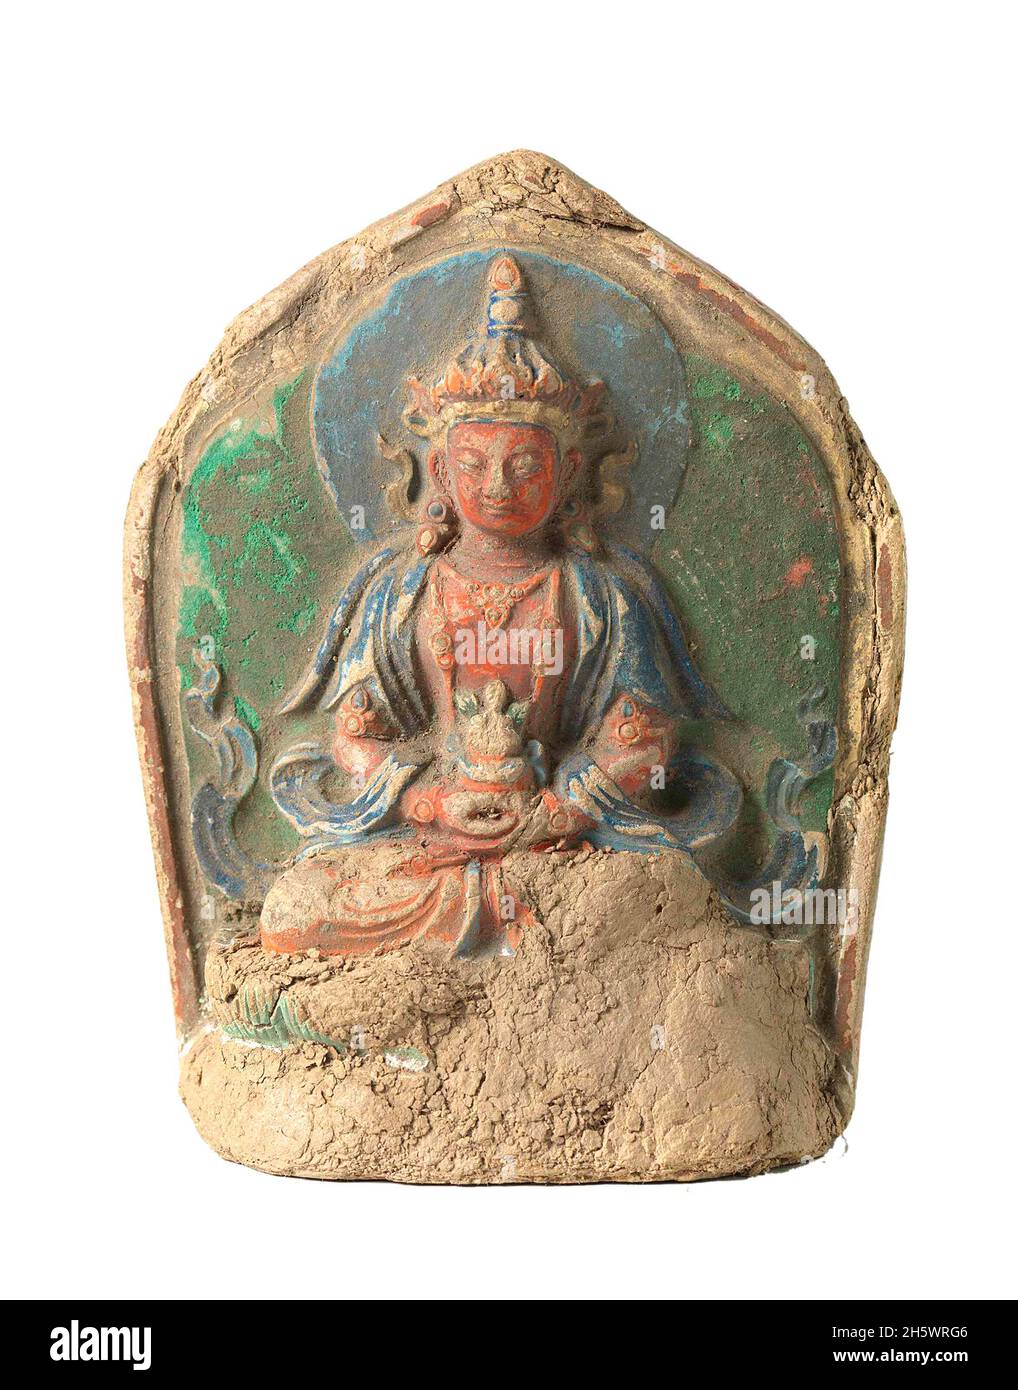 Skulptur, die Amitayus darstellt, auch bekannt als Amida oder Amit?bha. Nach den Schriften des Mahayana-Buddhismus ist Amitabha ein himmlischer buddha.Amit?bha ist der wichtigste buddha im Reinen Land-Buddhismus, einem Zweig des ostasiatischen Buddhismus. Im Vajrayana-Buddhismus ist Amit?bha für seine Langlebigkeit bekannt Amit?bha besitzt unendliche Verdienste, die aus guten Taten in unzähligen vergangenen Leben als Bodhisattva namens Dharm?kara resultieren. Amit?bha bedeutet 'Unendliches Licht', und Amit?yus bedeutet 'Unendliches Leben', daher wird Amit?bha auch 'der Buddha des unermesslichen Lichts und Lebens' genannt. Tibet, 1700-1800CE Stockfoto